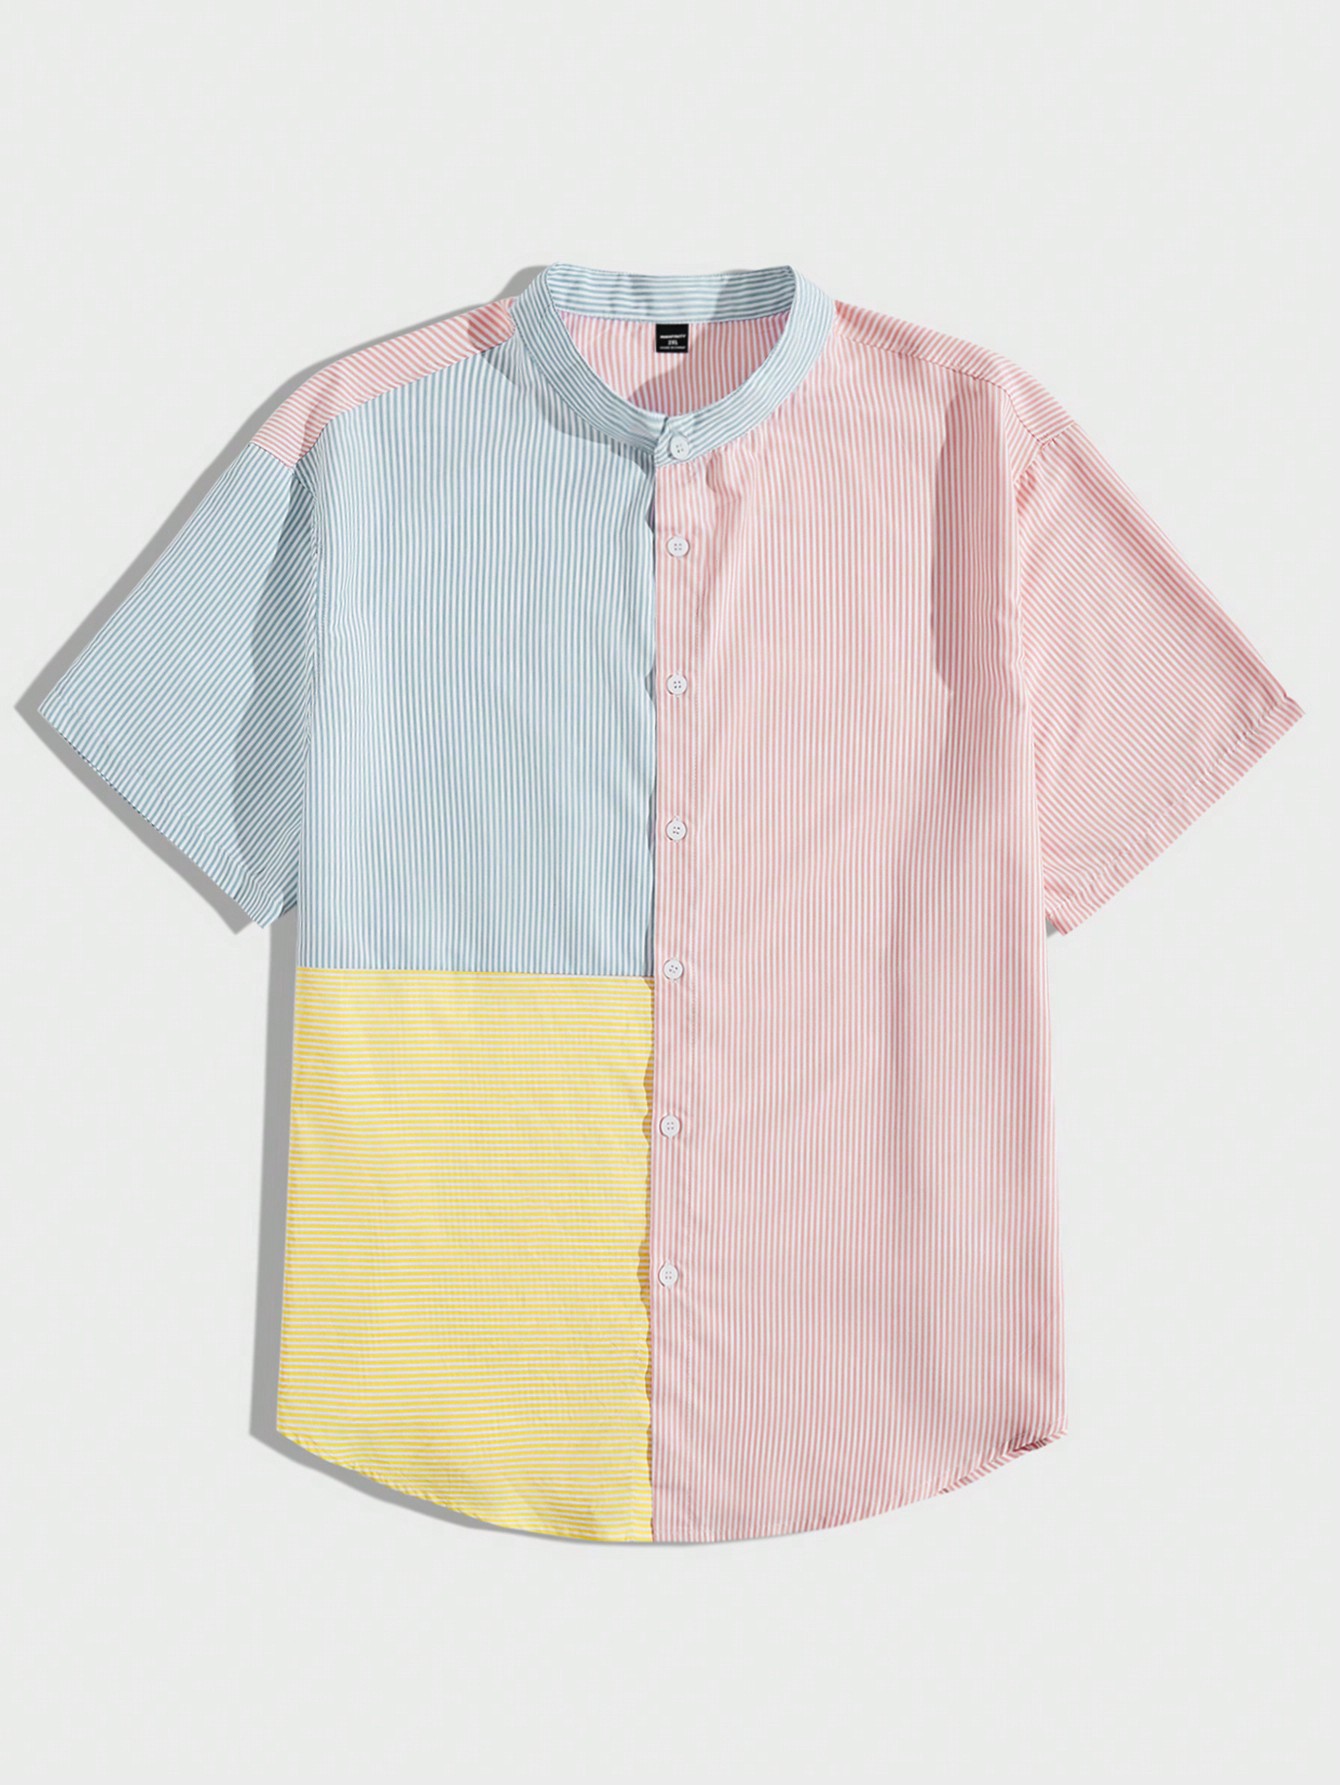 Мужская рубашка в полоску с цветными блоками Manfinity Hypemode Plus, многоцветный мужская повседневная модная джинсовая рубашка больших размеров manfinity hypemode синий